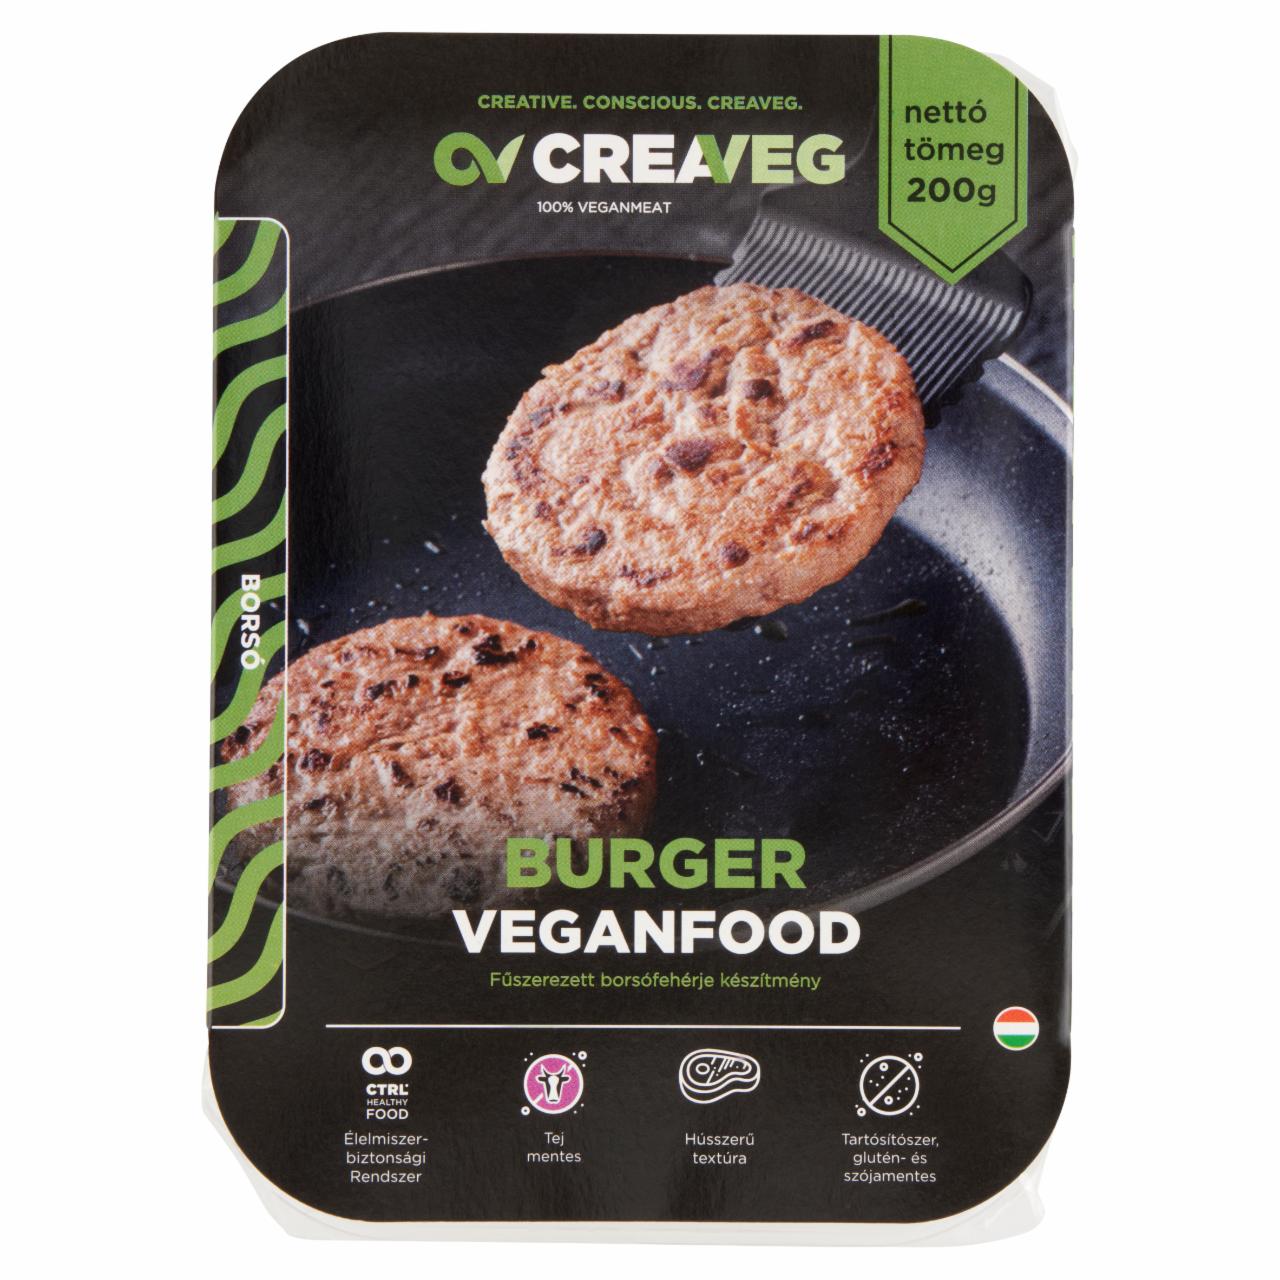 Képek - Creaveg Veganfood Burger fűszerezett borsófehérje készítmény 200 g